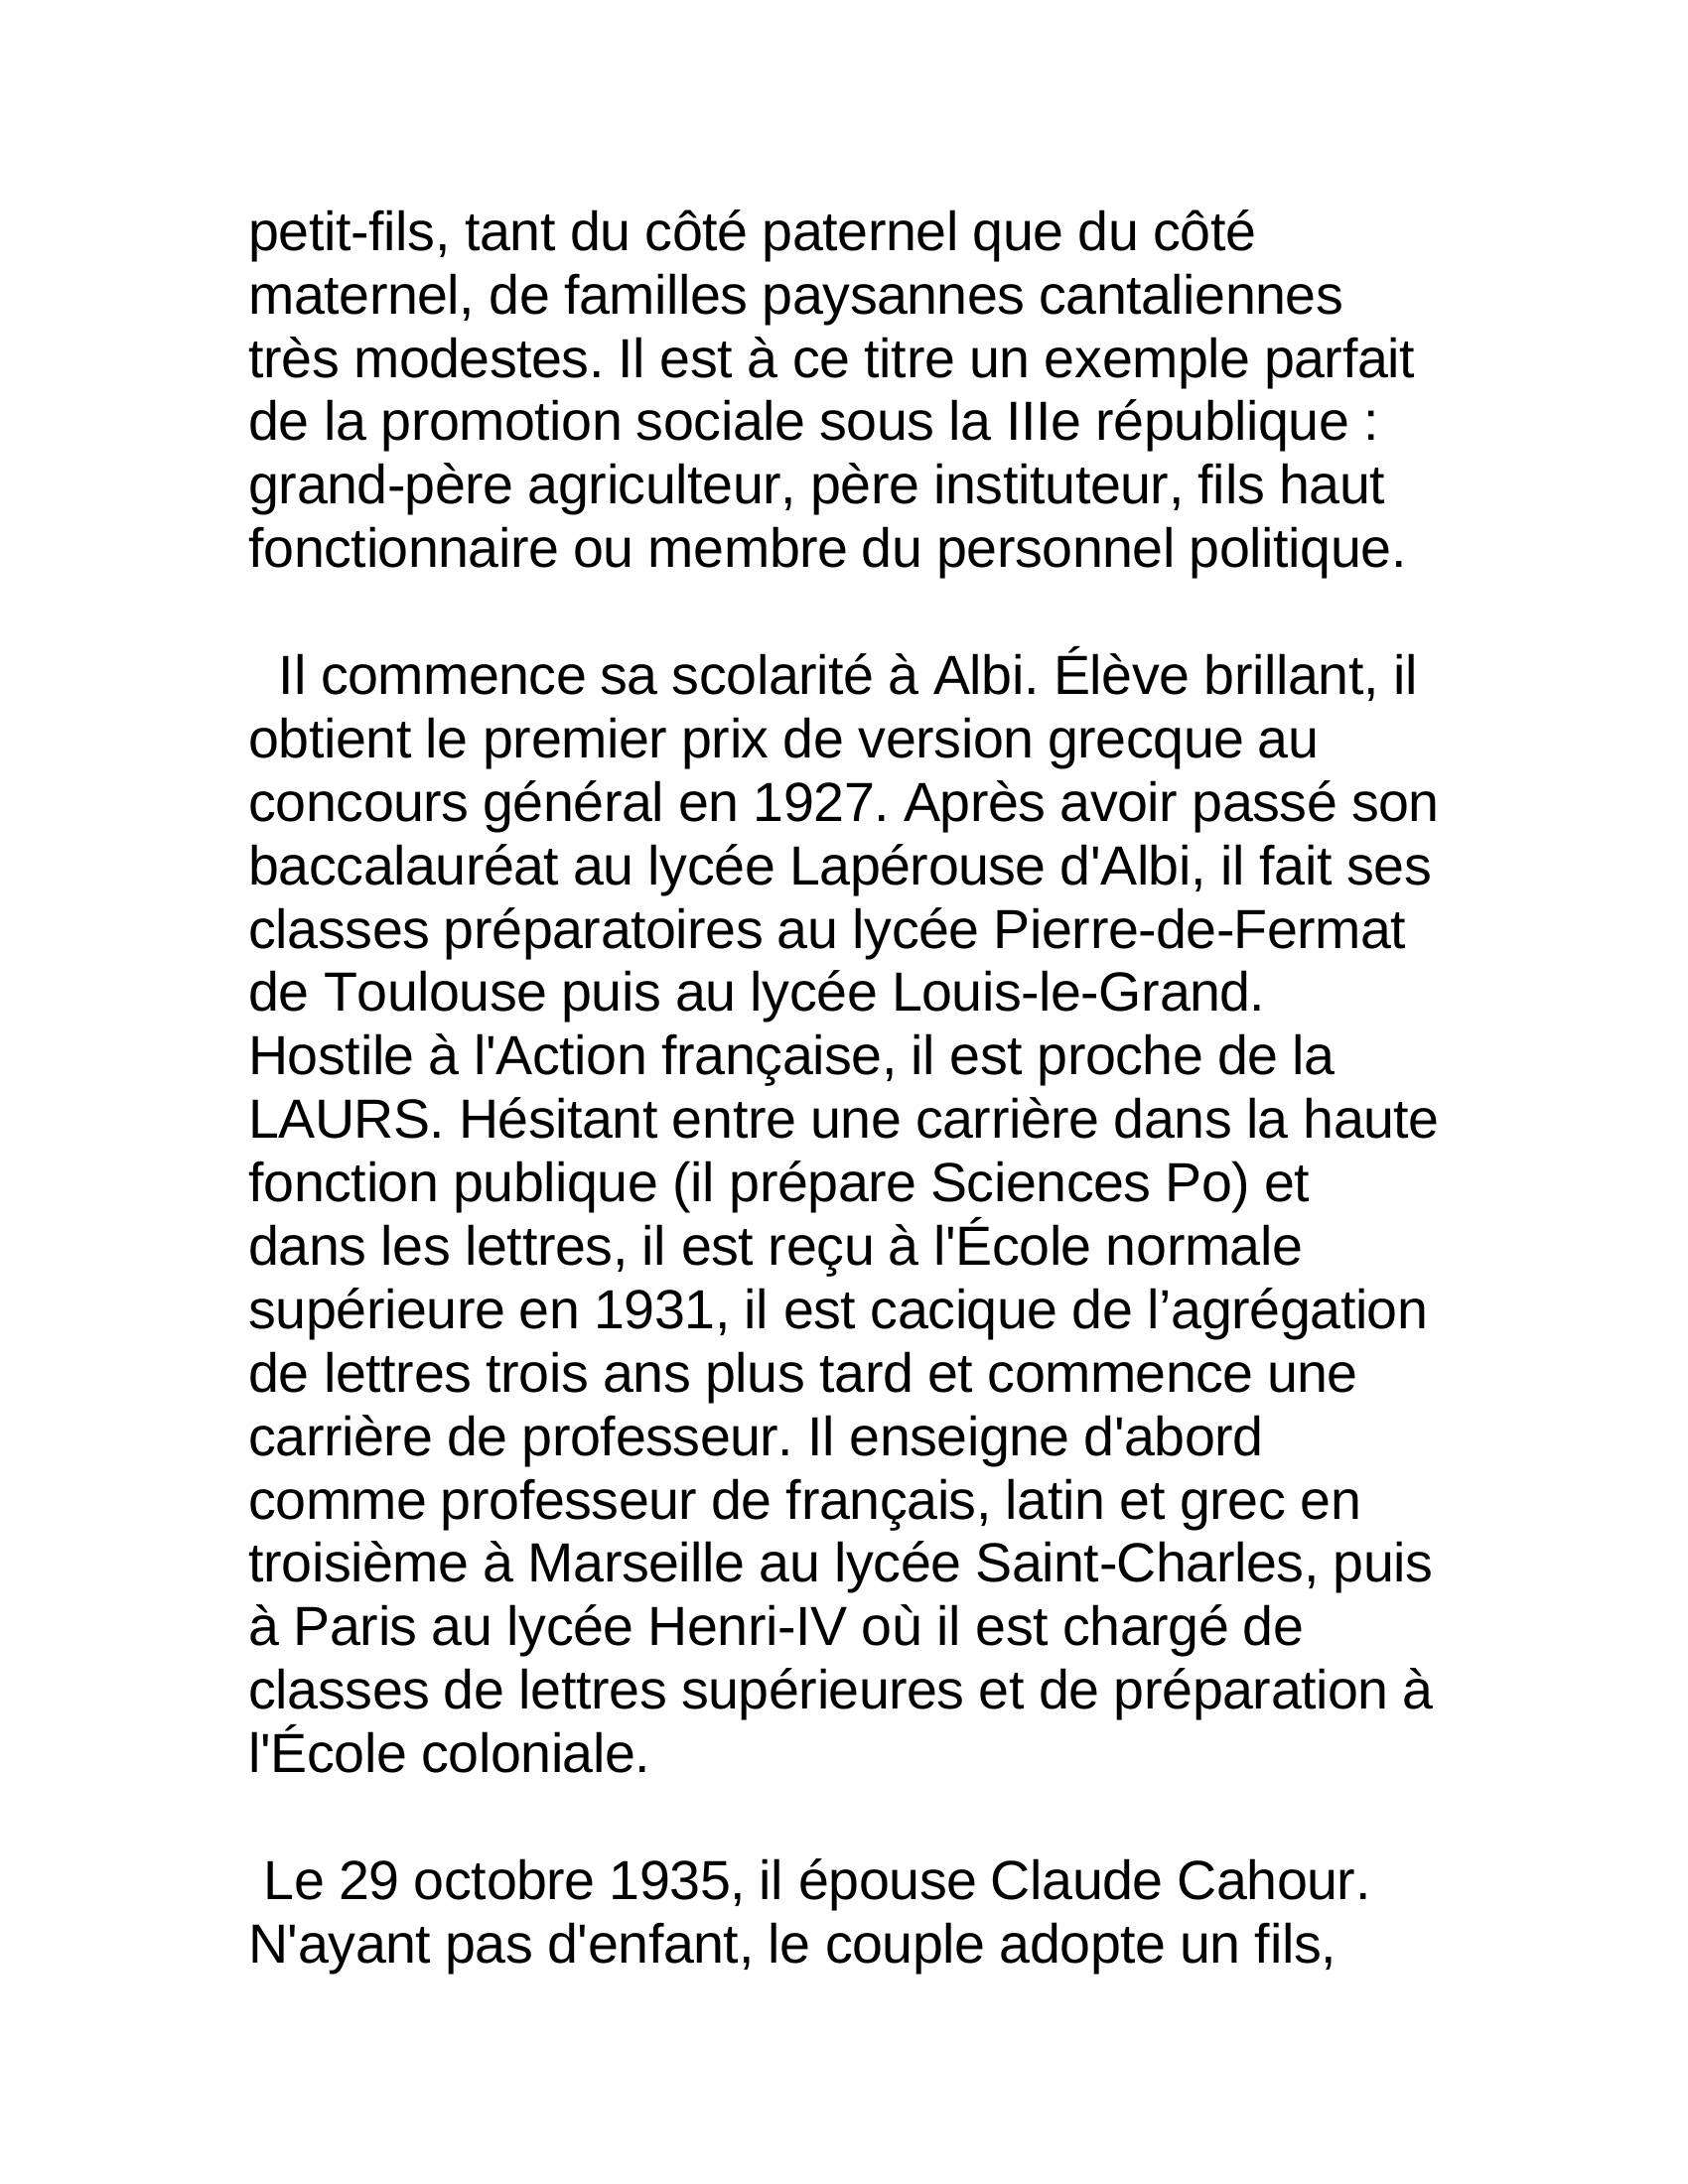 Prévisualisation du document Georges Pomidou